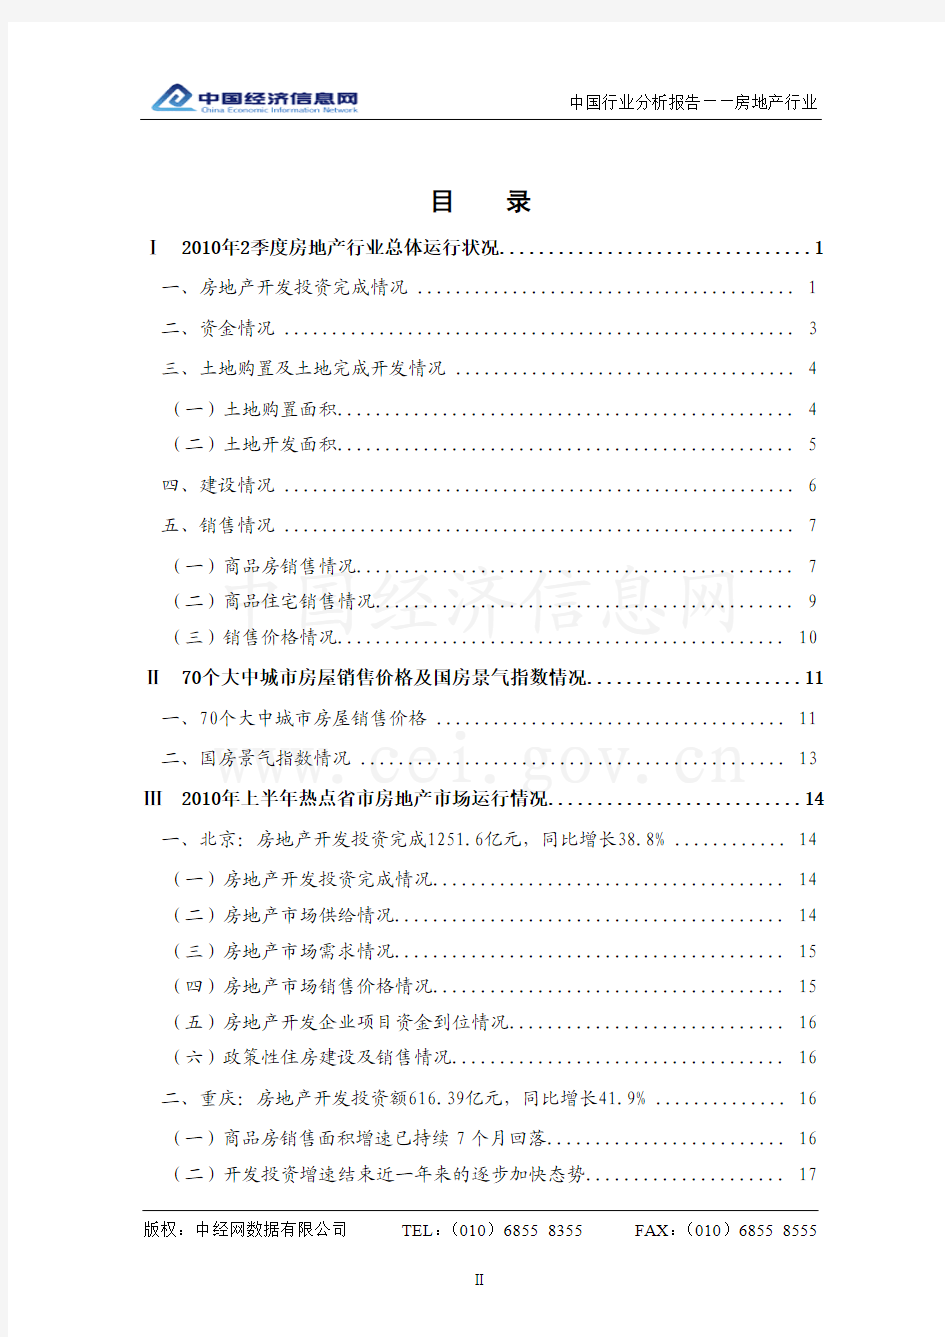 中国房地产行业分析报告(2010年2季度)